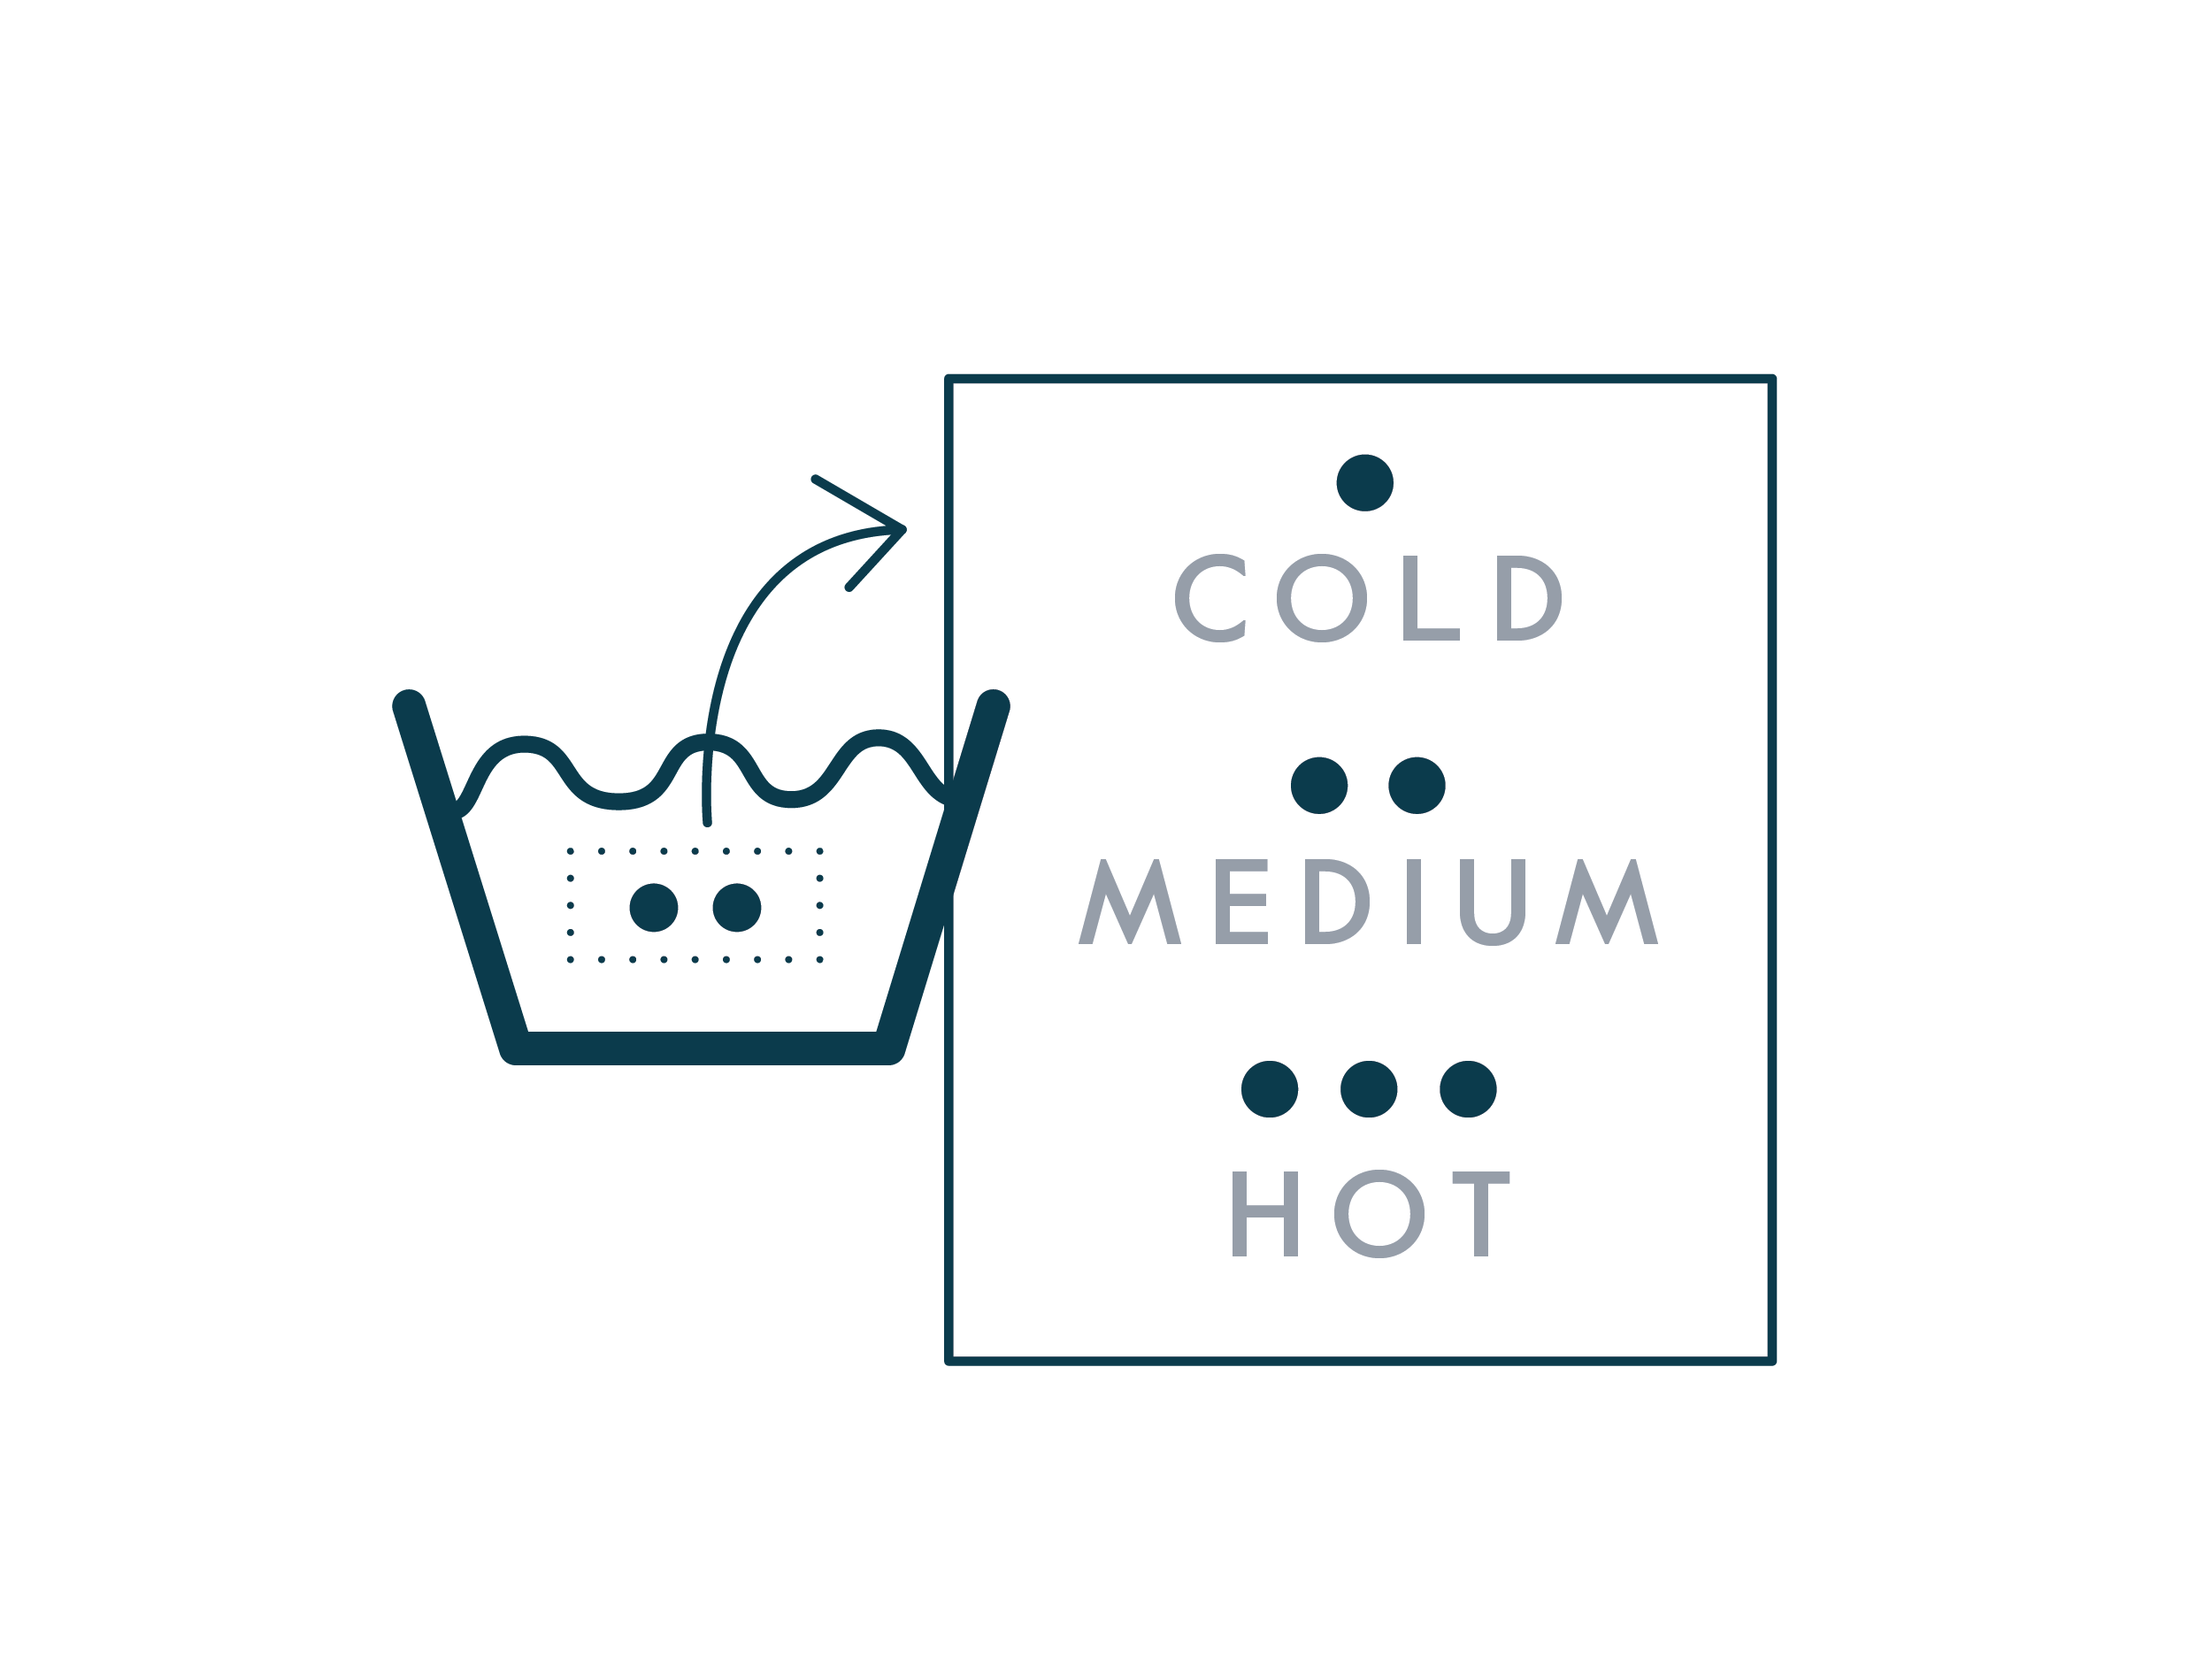 Wash temperatures illustration